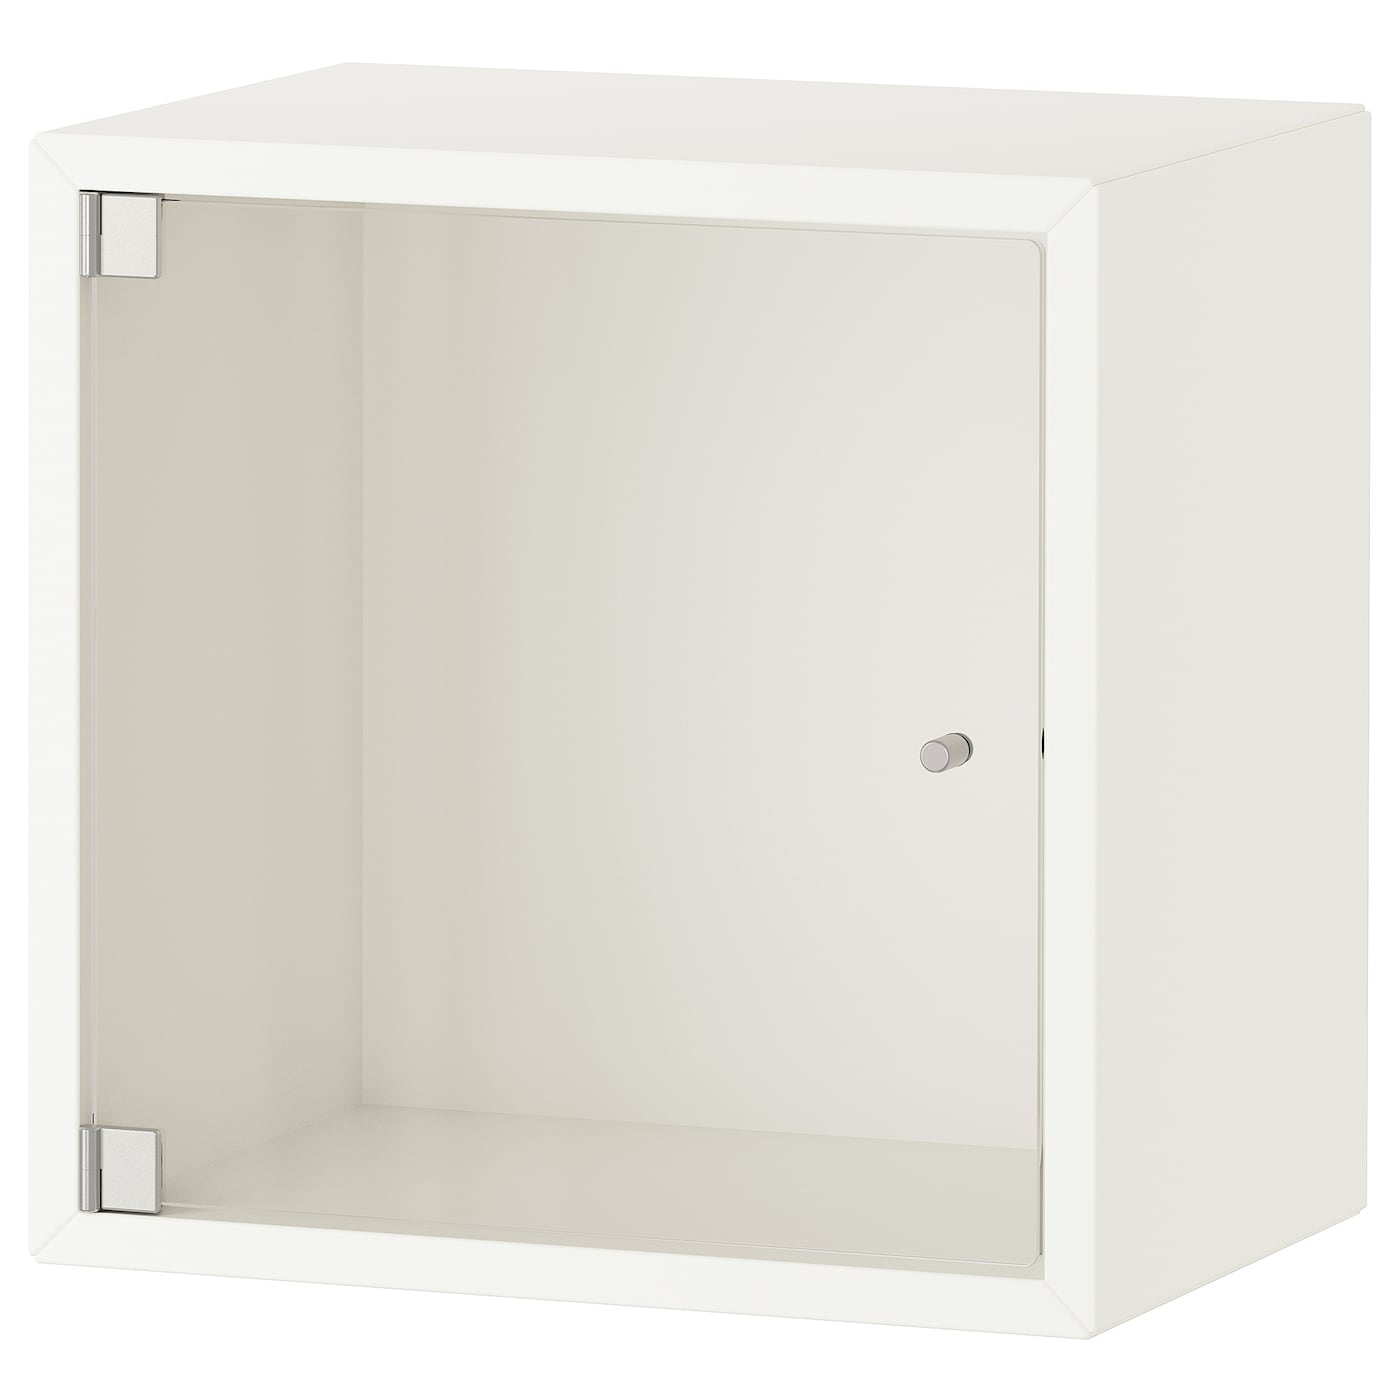 Навесной шкаф - IKEA EKET, 35x25x35 см, белый, ЭКЕТ ИКЕА